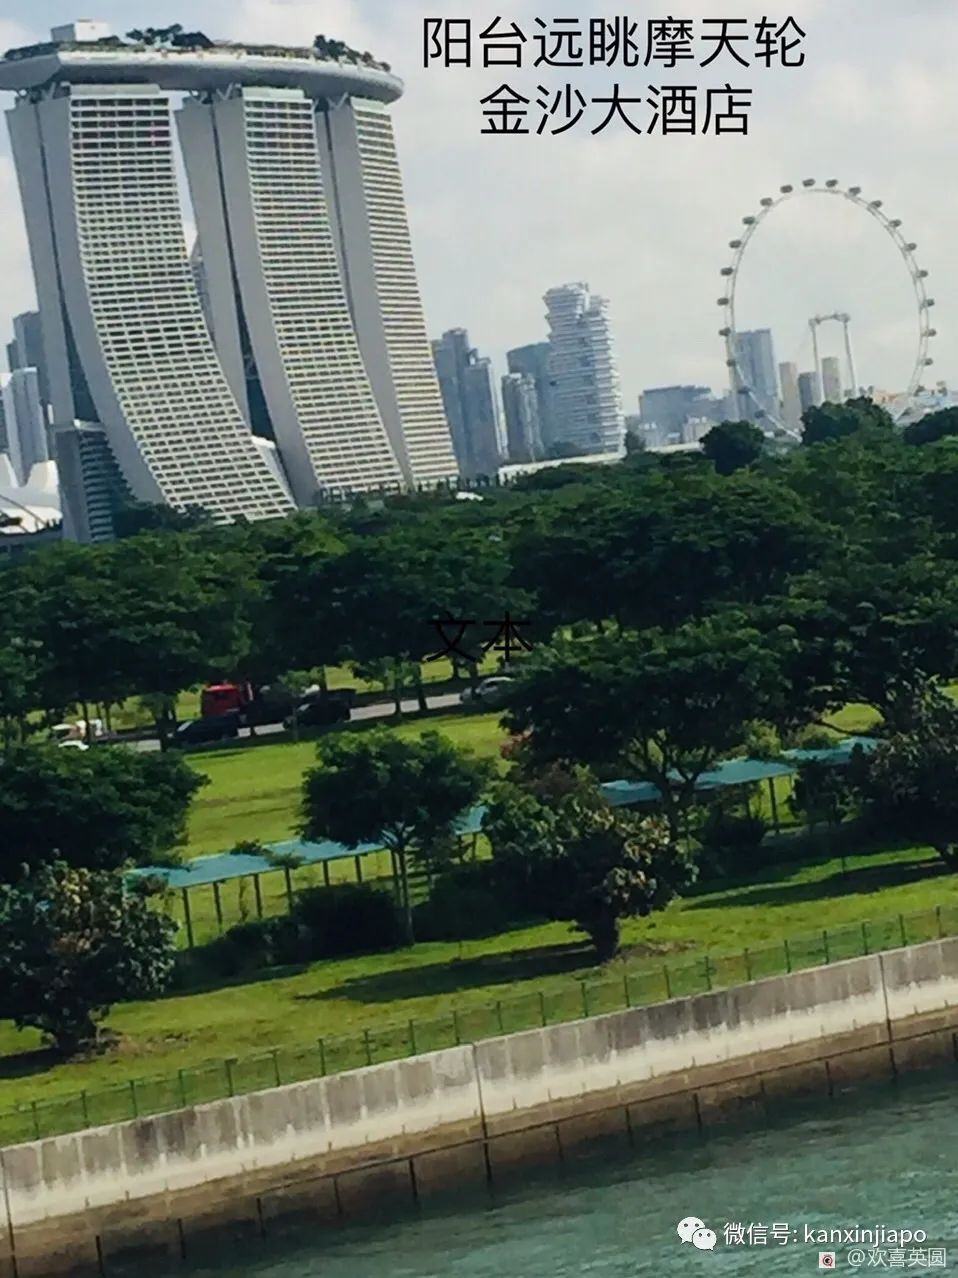 “上千人登遊輪不是兒戲，新加坡碼頭如臨大敵”